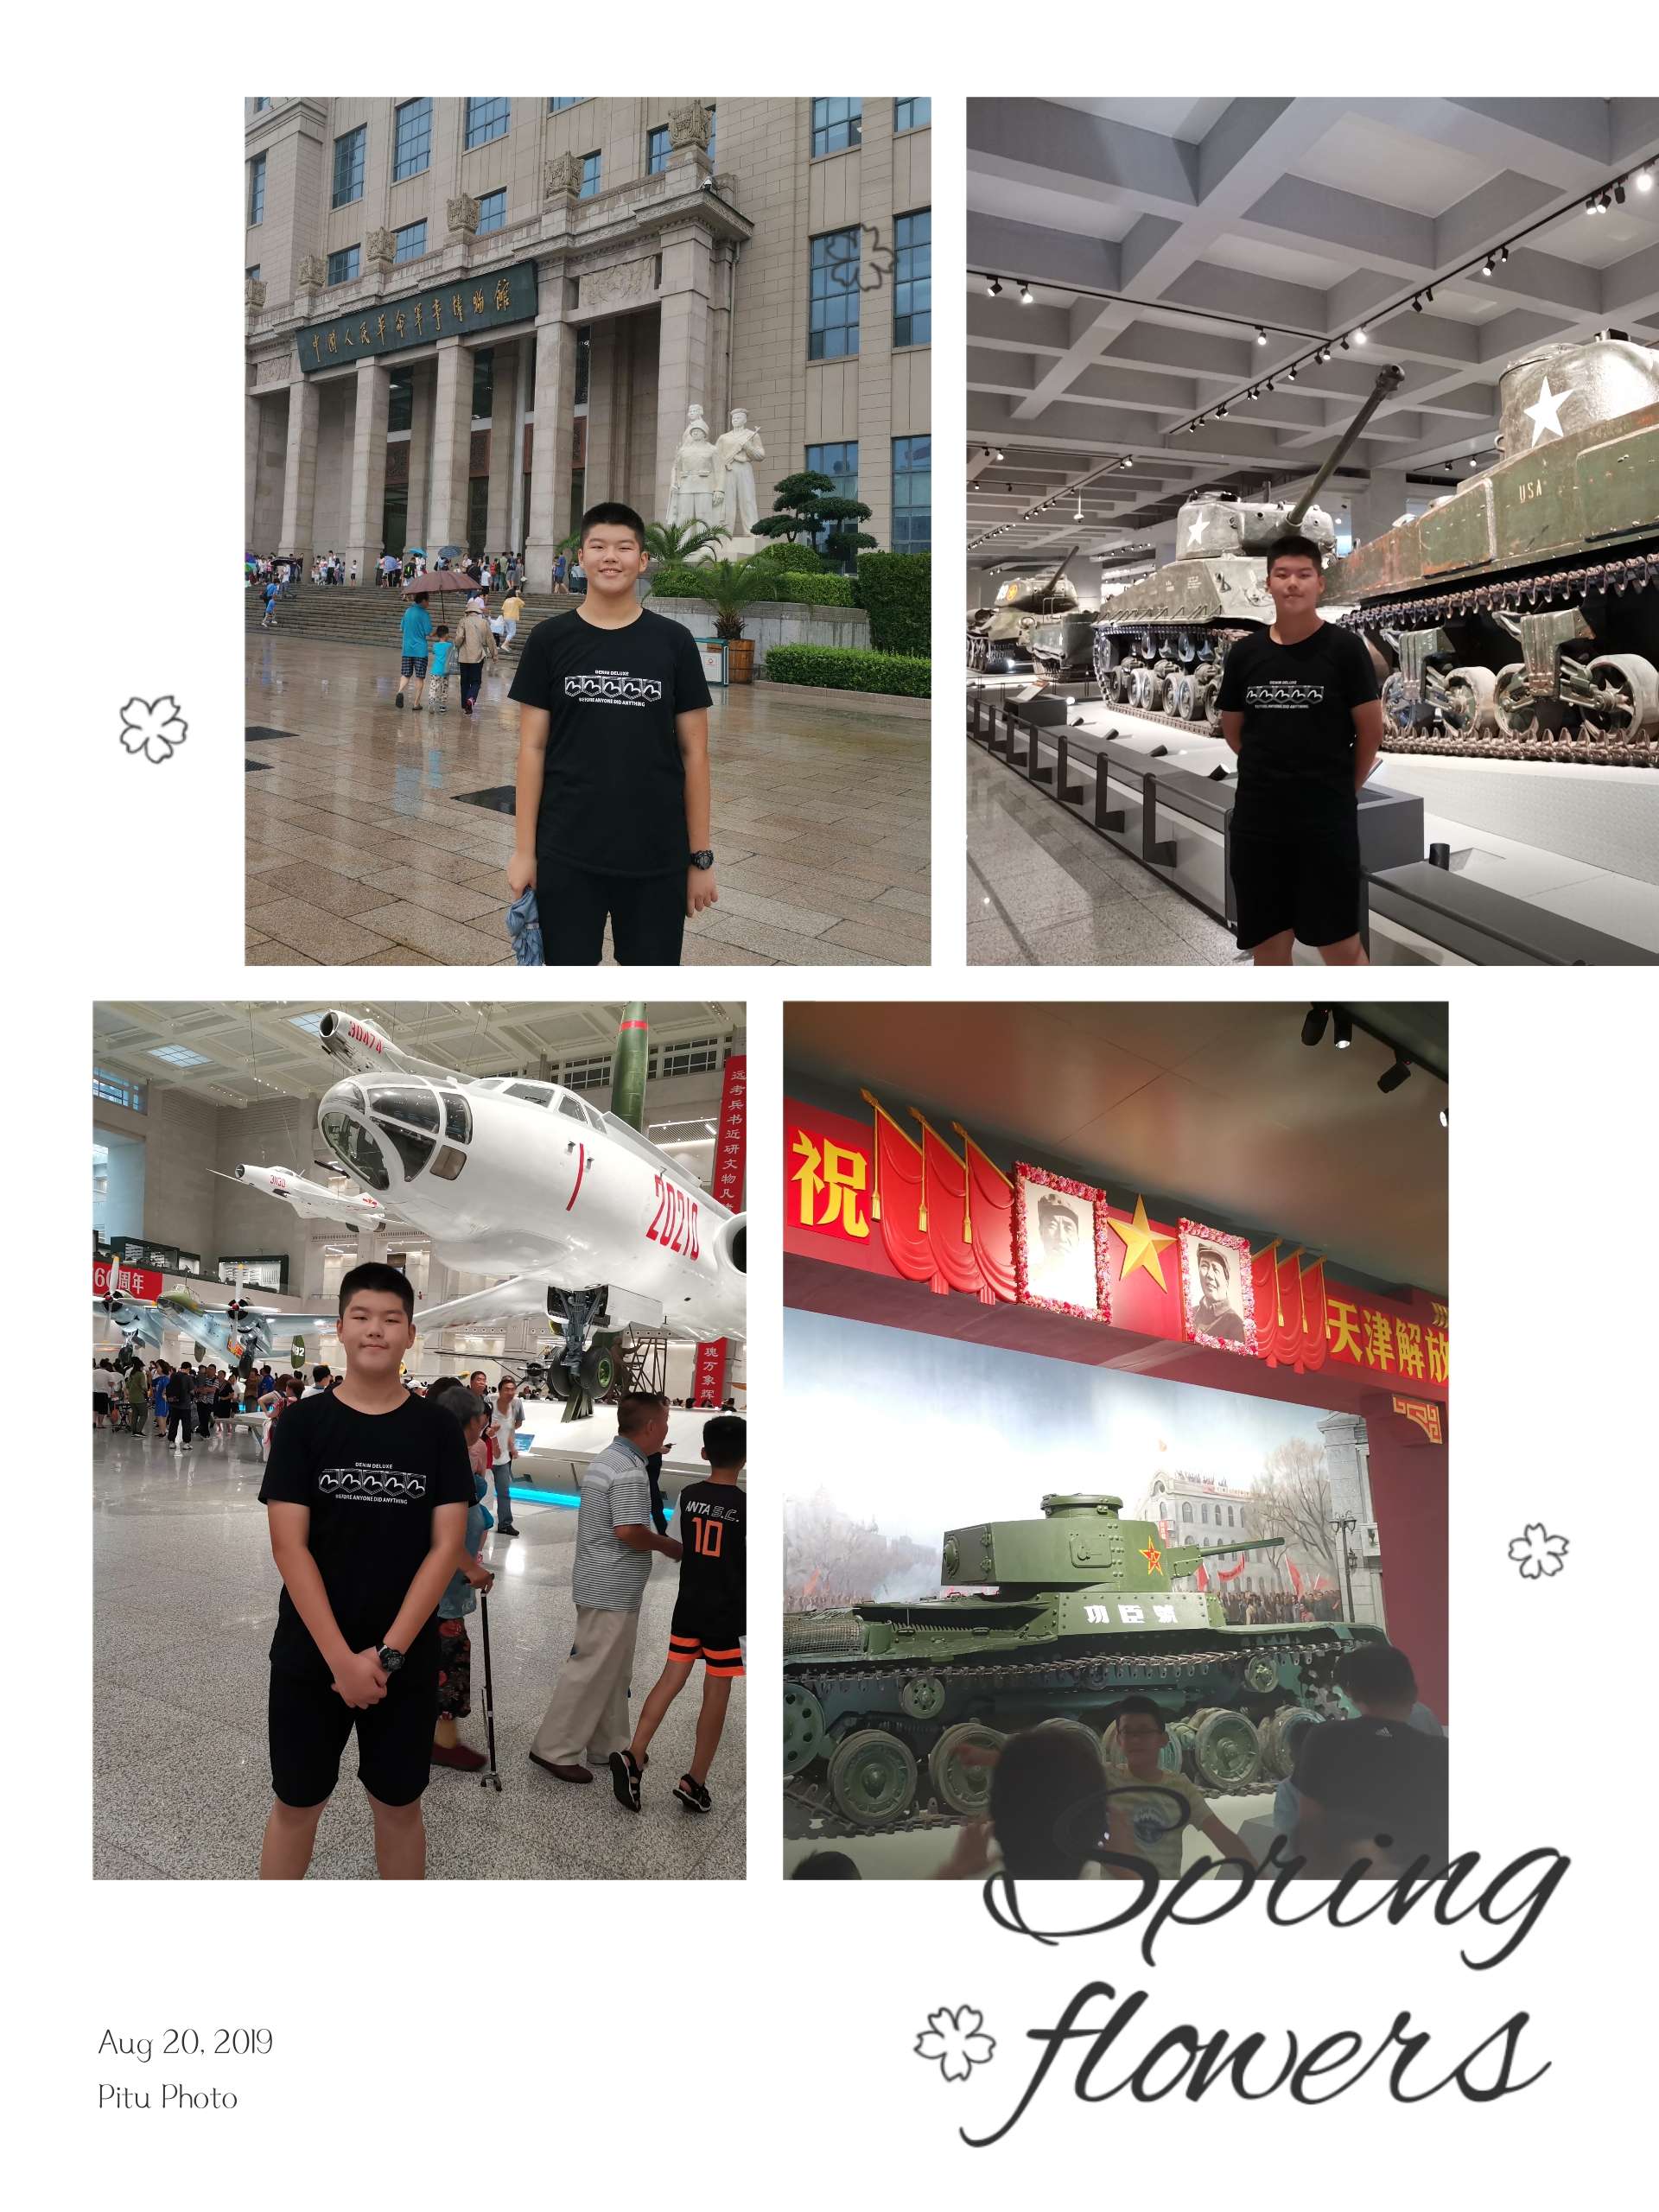 海淀实验中学学生参观LOL比赛赌注平台中国人民革命军事博物馆